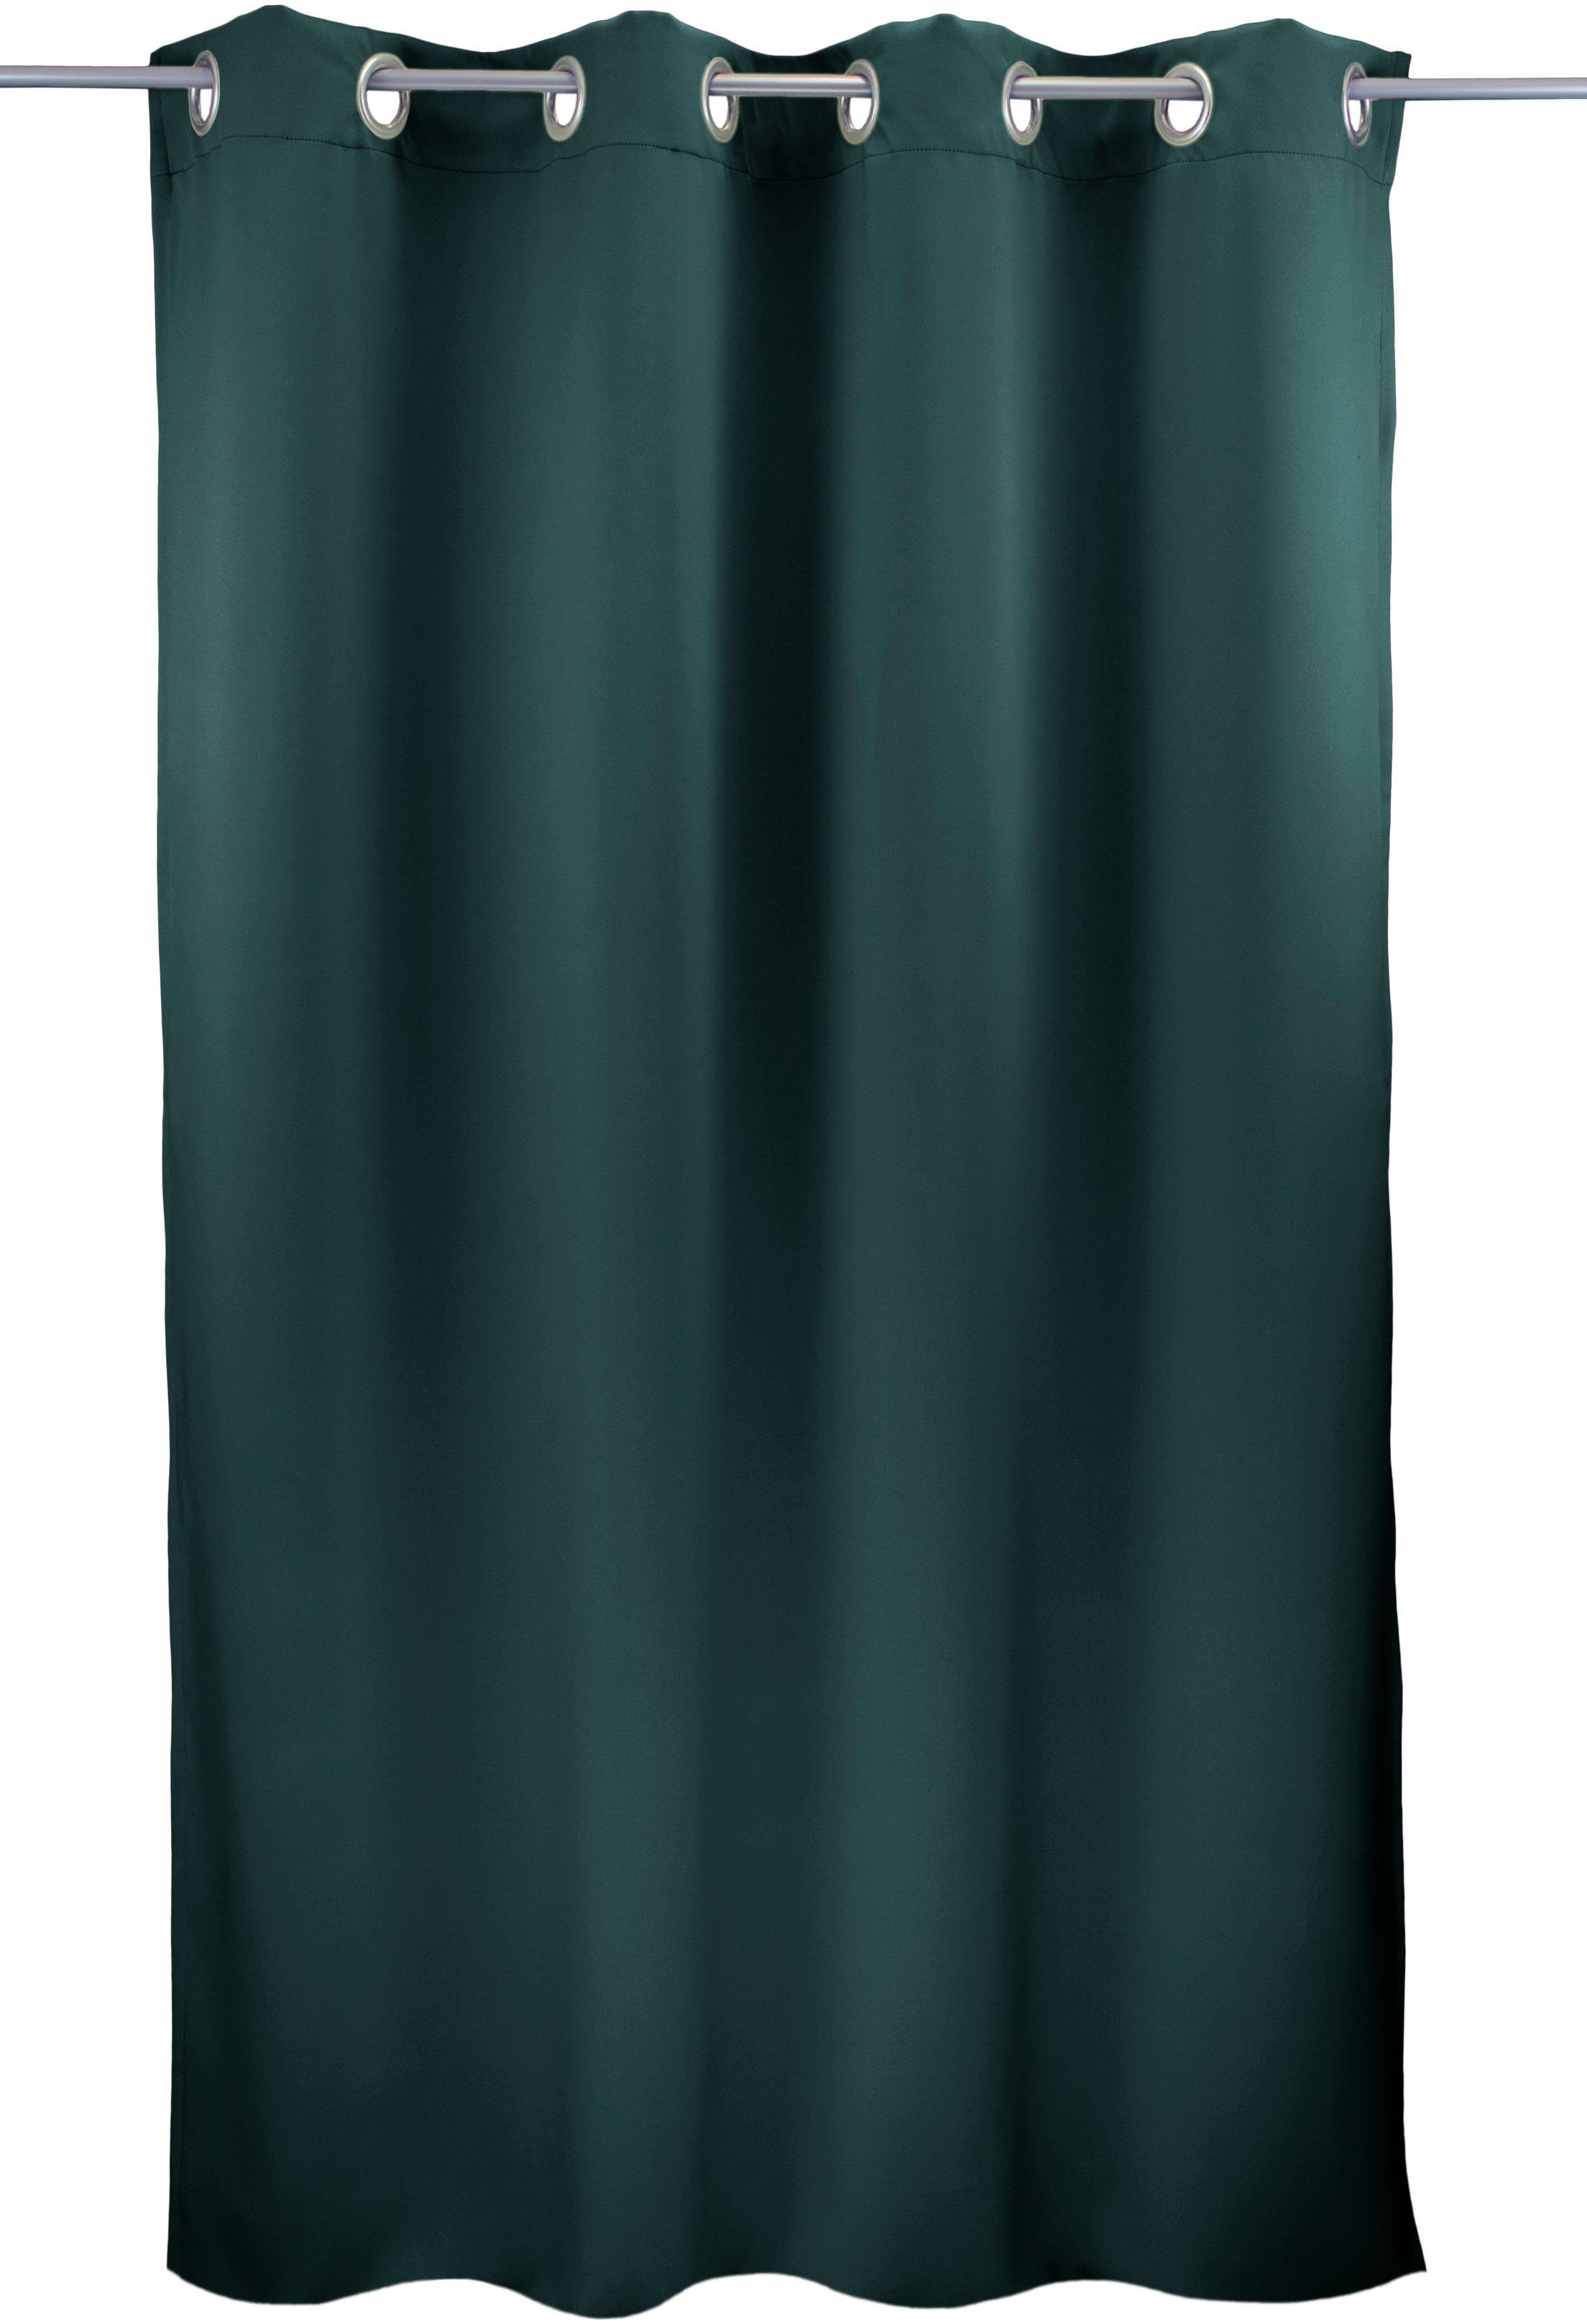 Vorhang Leon1, VHG, Ösen (1 St), verdunkelnd graublau